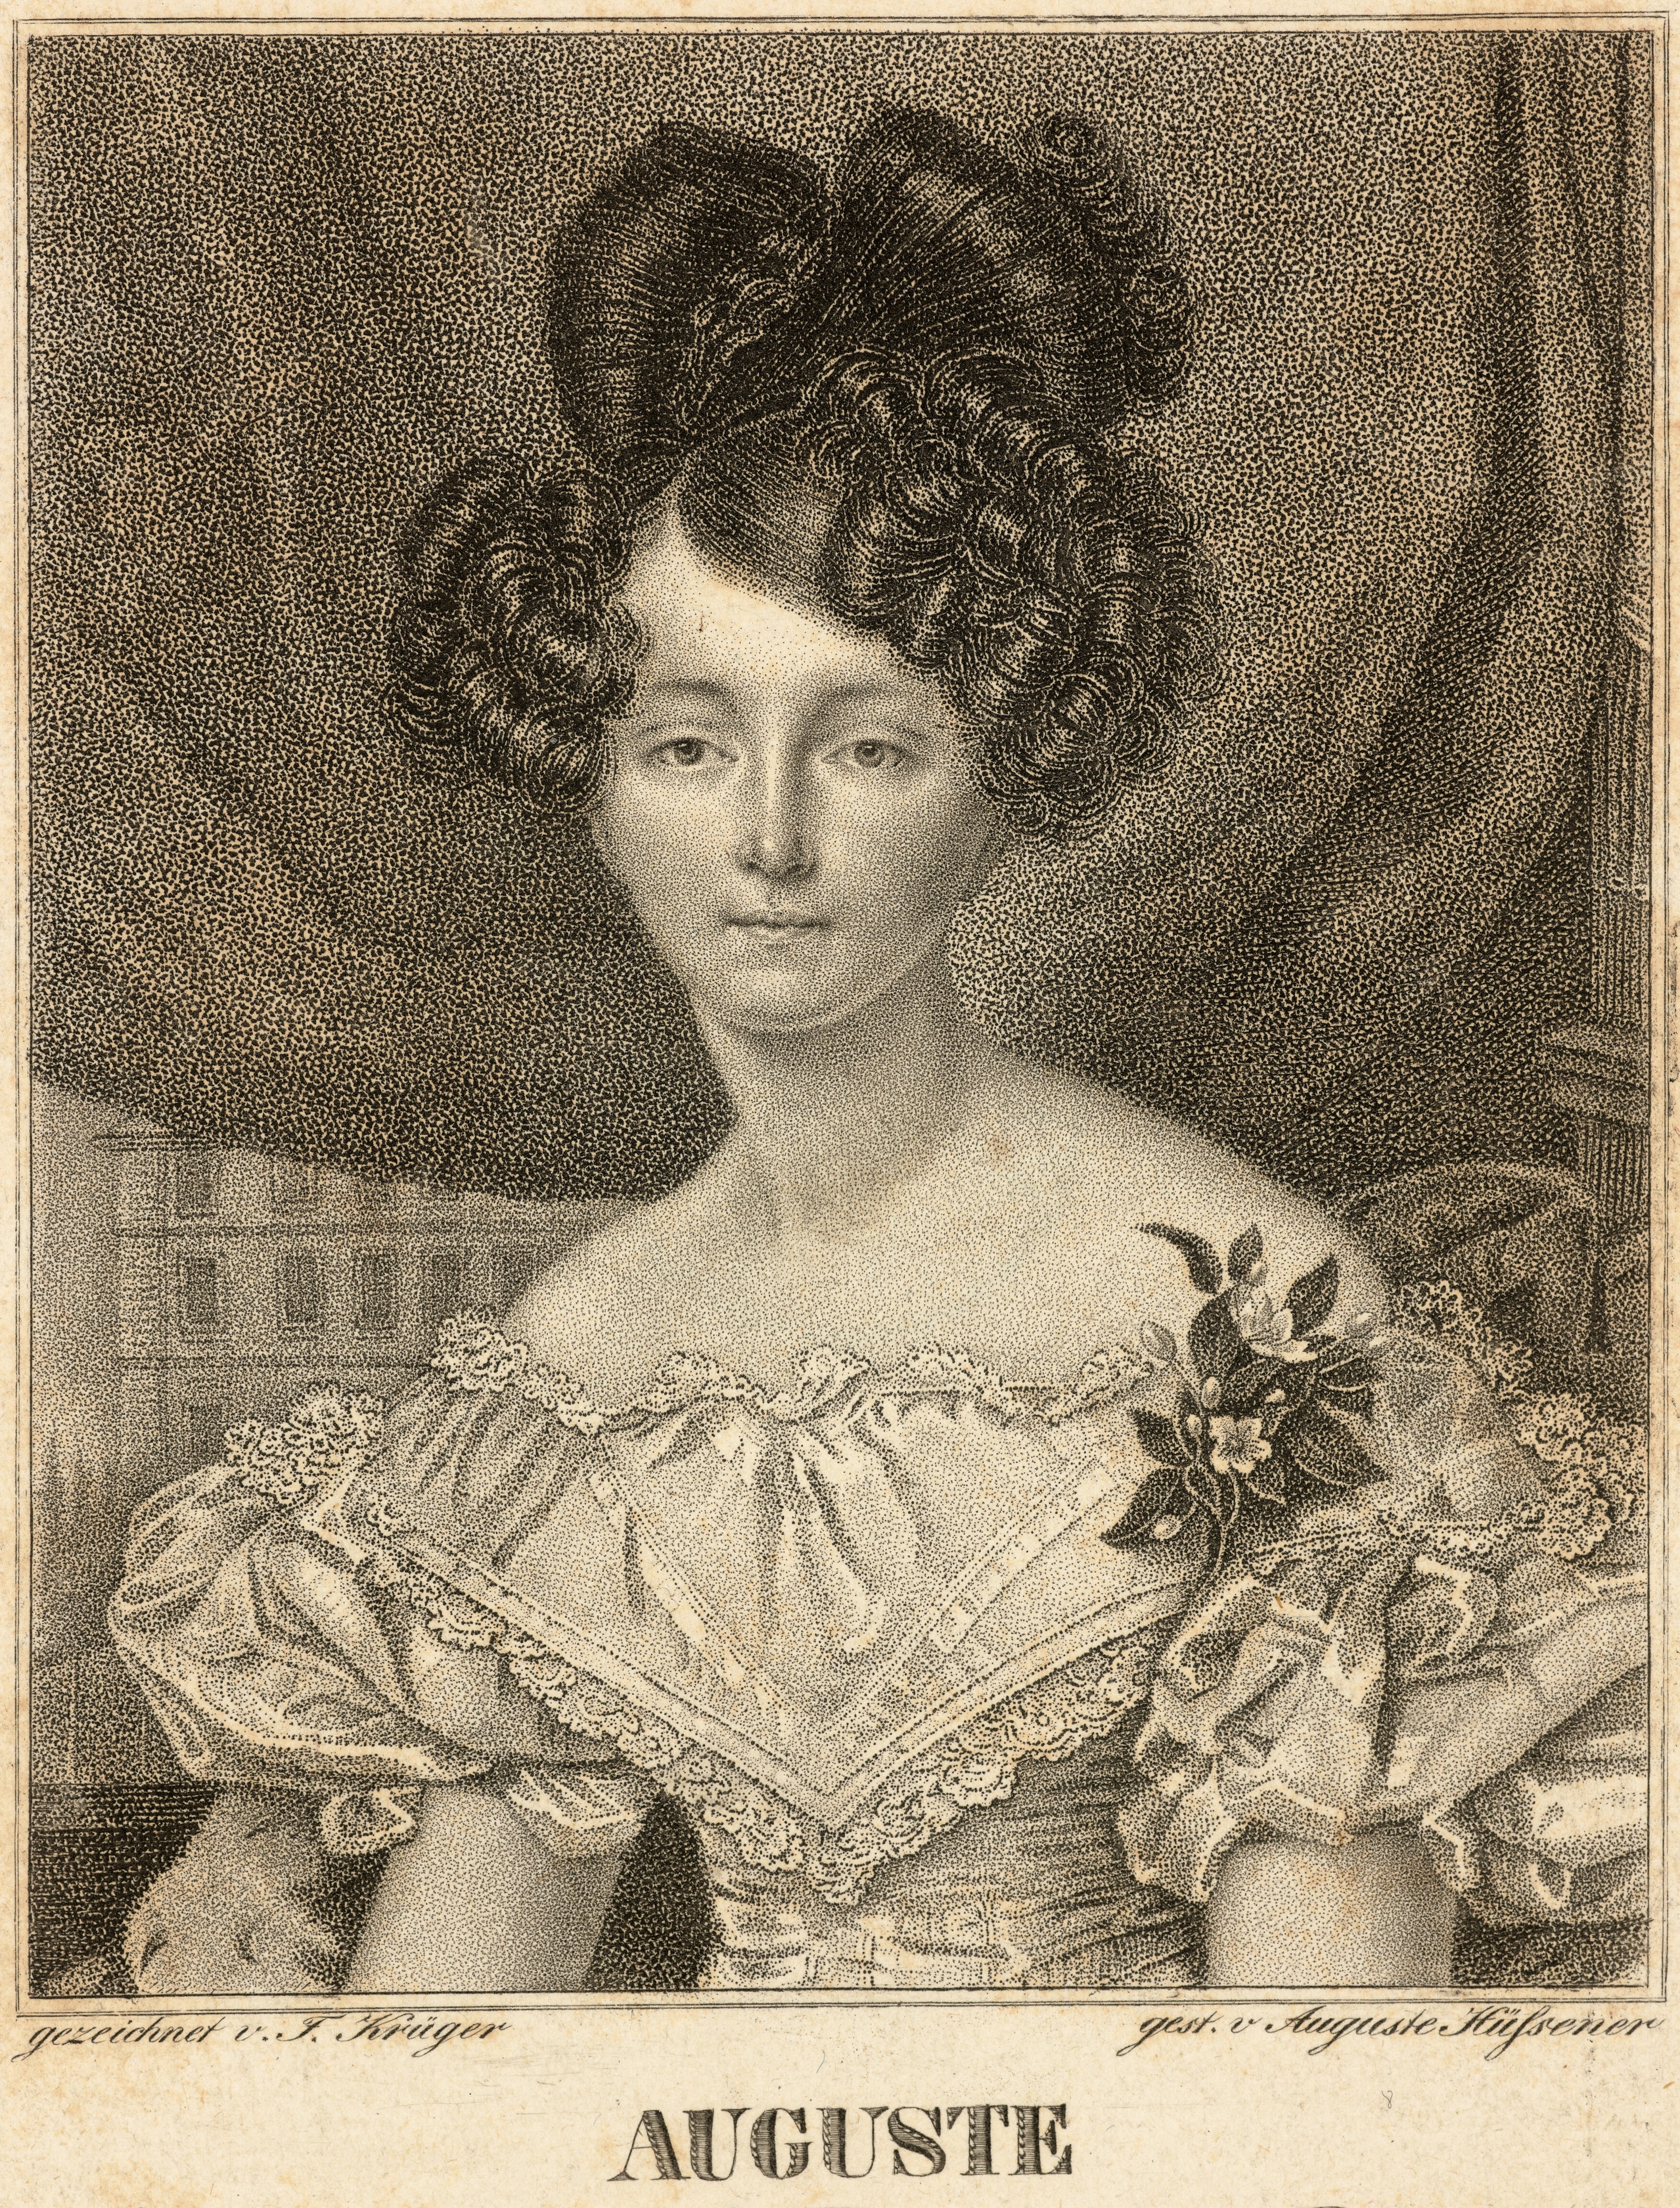 Hüssener, Auguste: Porträt Augusta, Prinzessin von Preußen, geb. Prinzessin von Sachsen-Weimar (Stiftung Stadtmuseum Berlin Public Domain Mark)